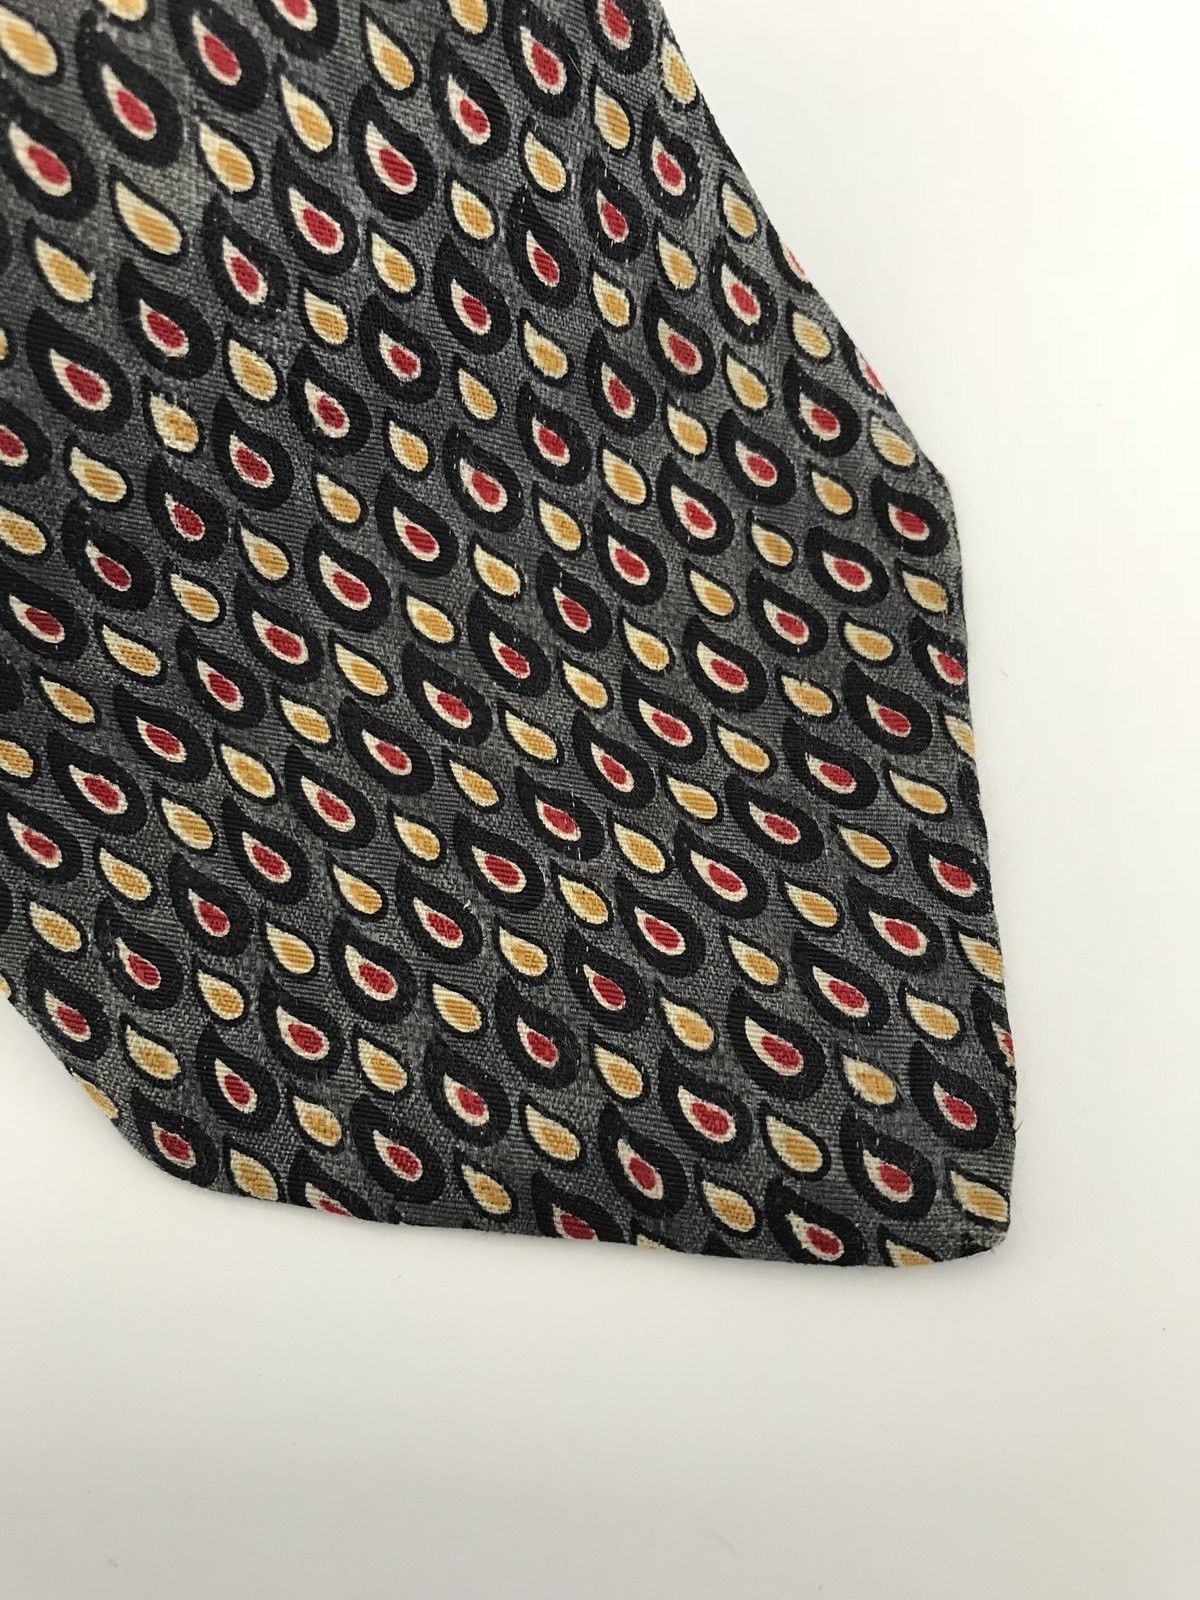 Gant Men's Tie Brown Teardrop  Red Yellow 4" x 57" Silk Made in USA #BT 213 - $4.99